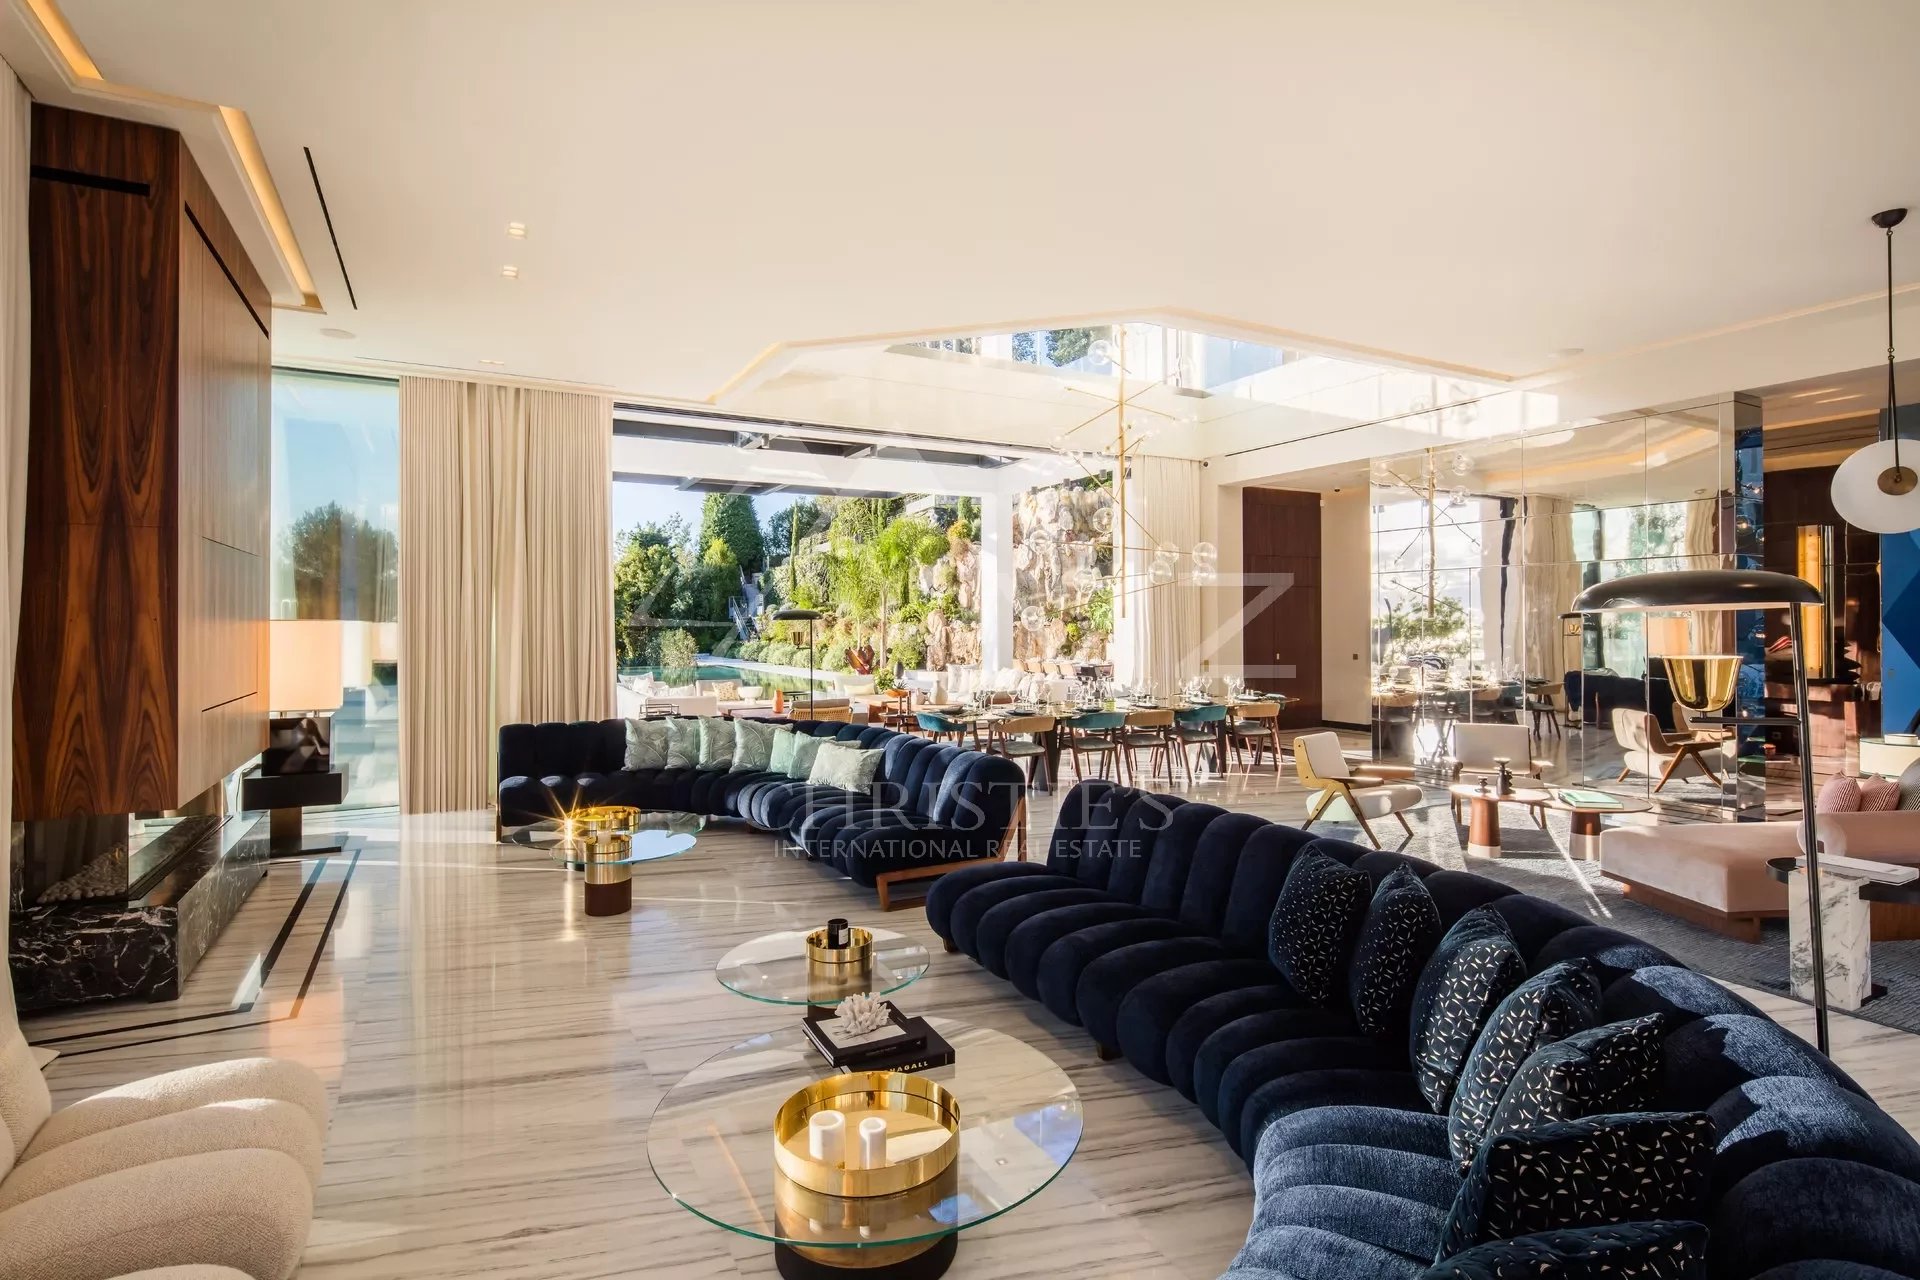 Cannes Croix des gardes - New exceptional villa